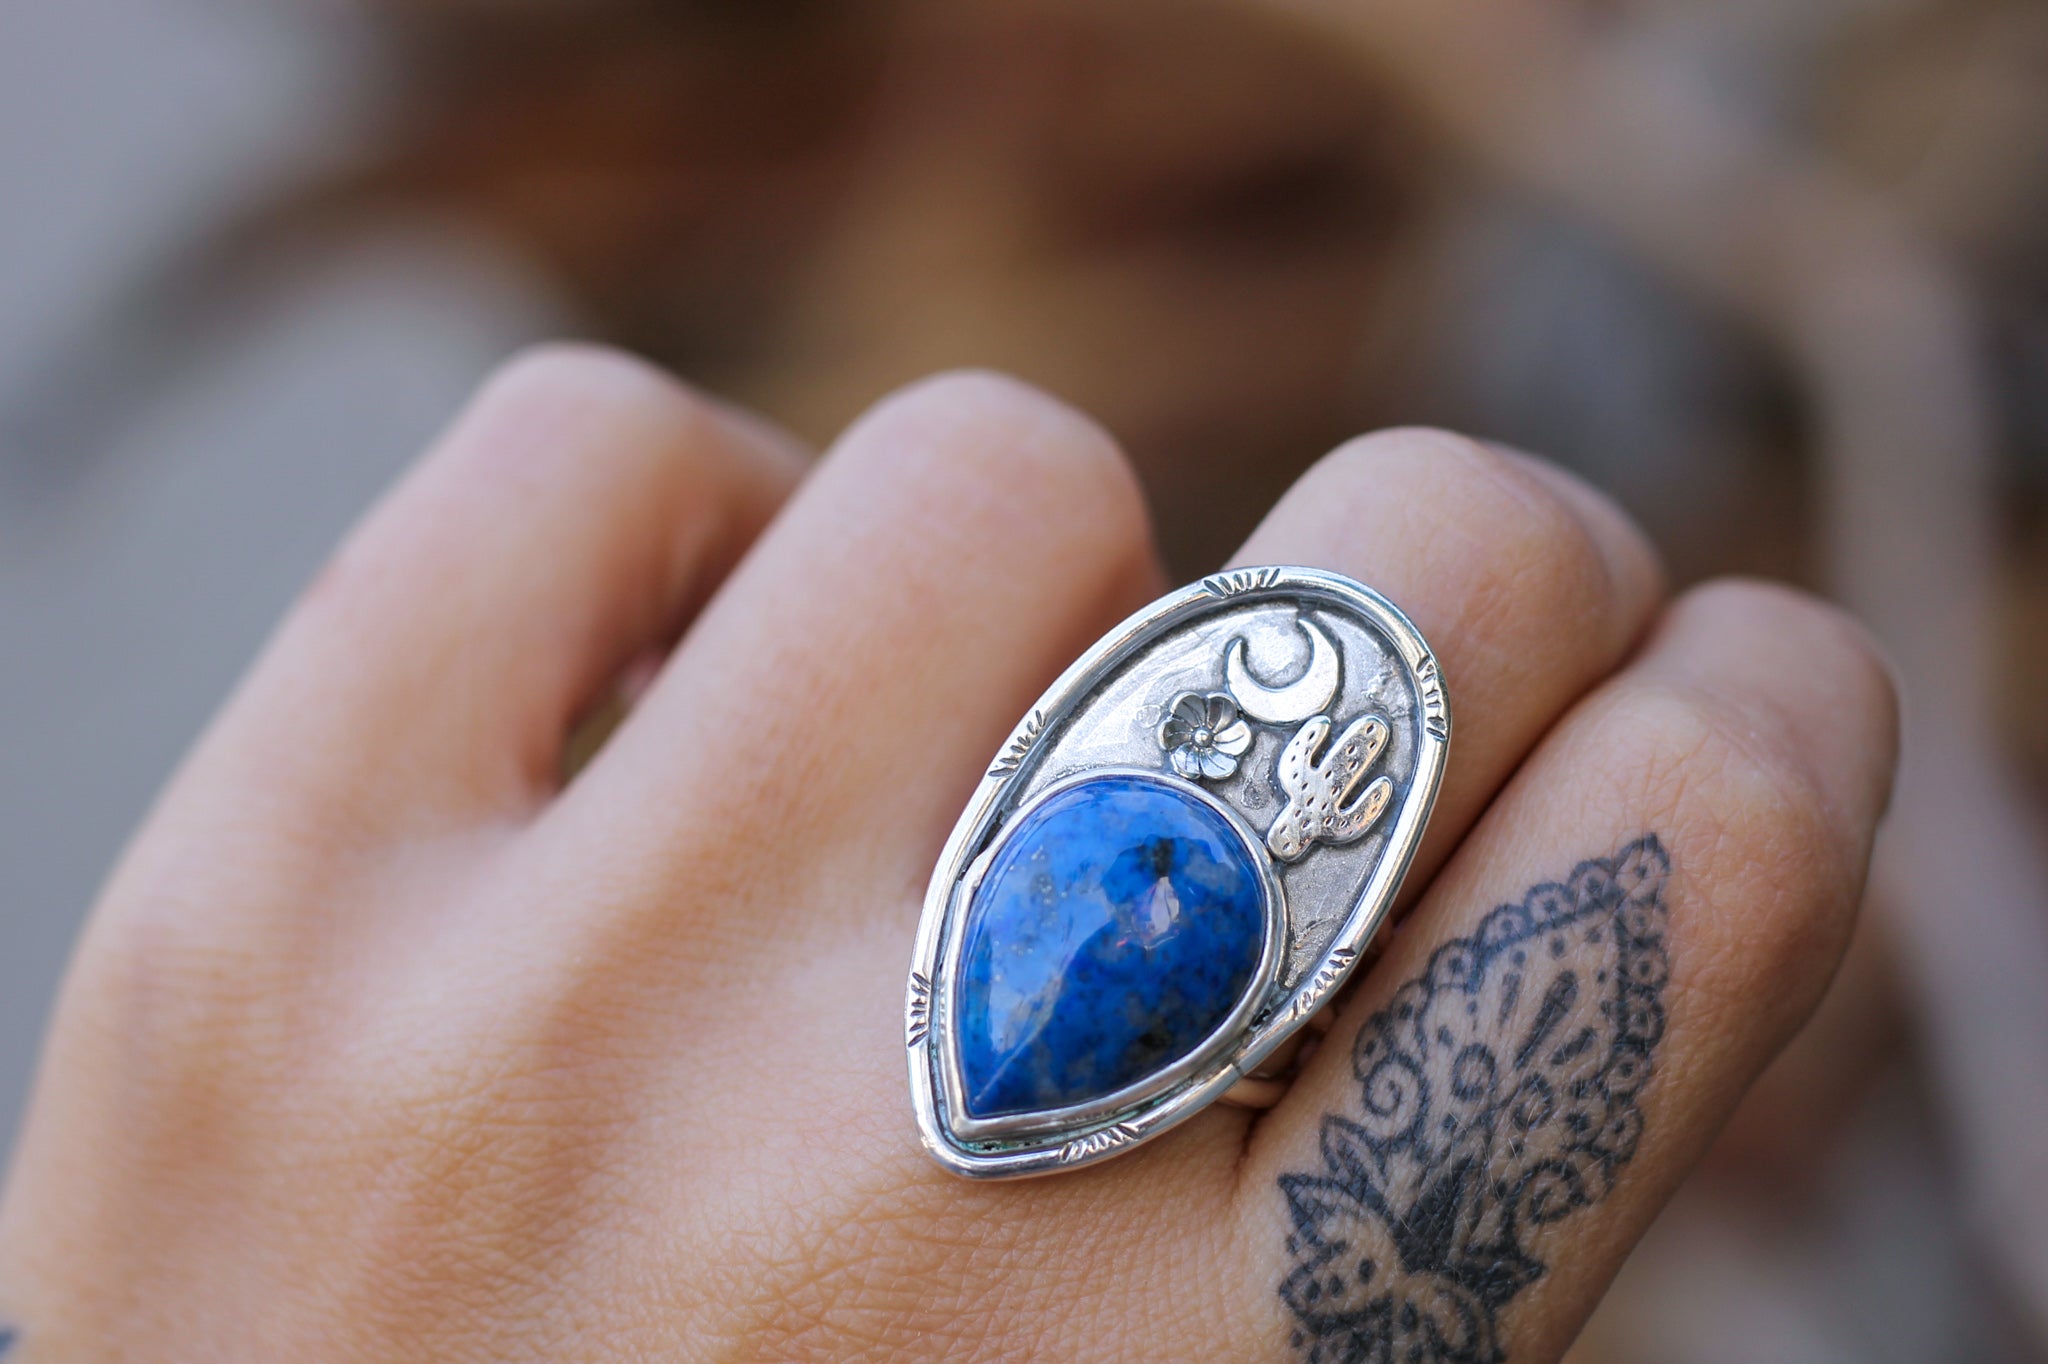 Desert Night Lapis Lazuli Ring - Size 8.5